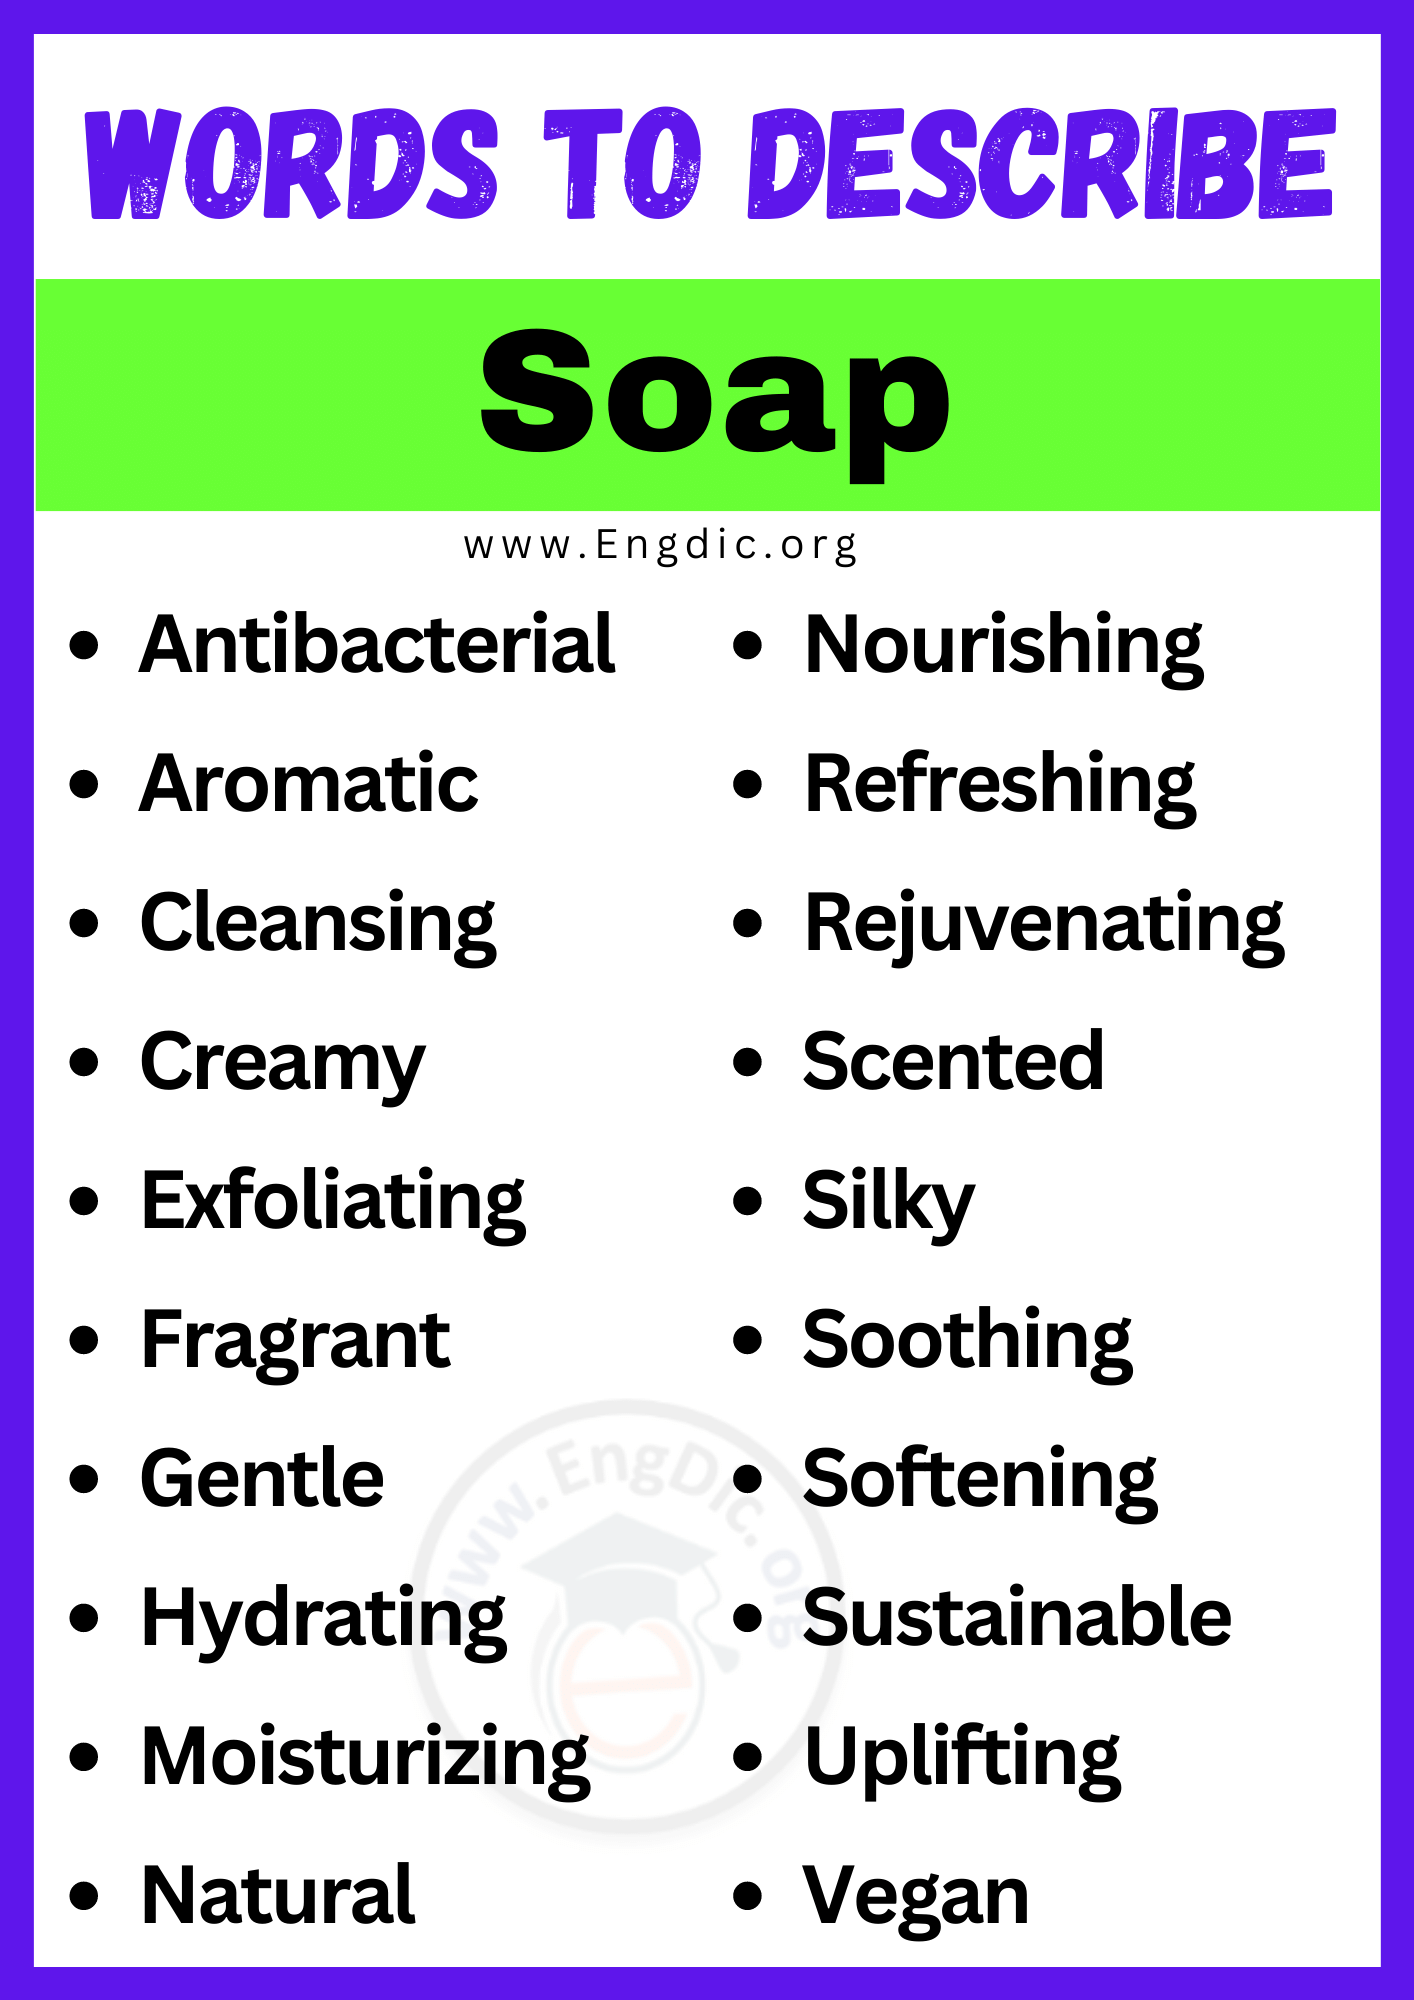 Words to Describe Soap